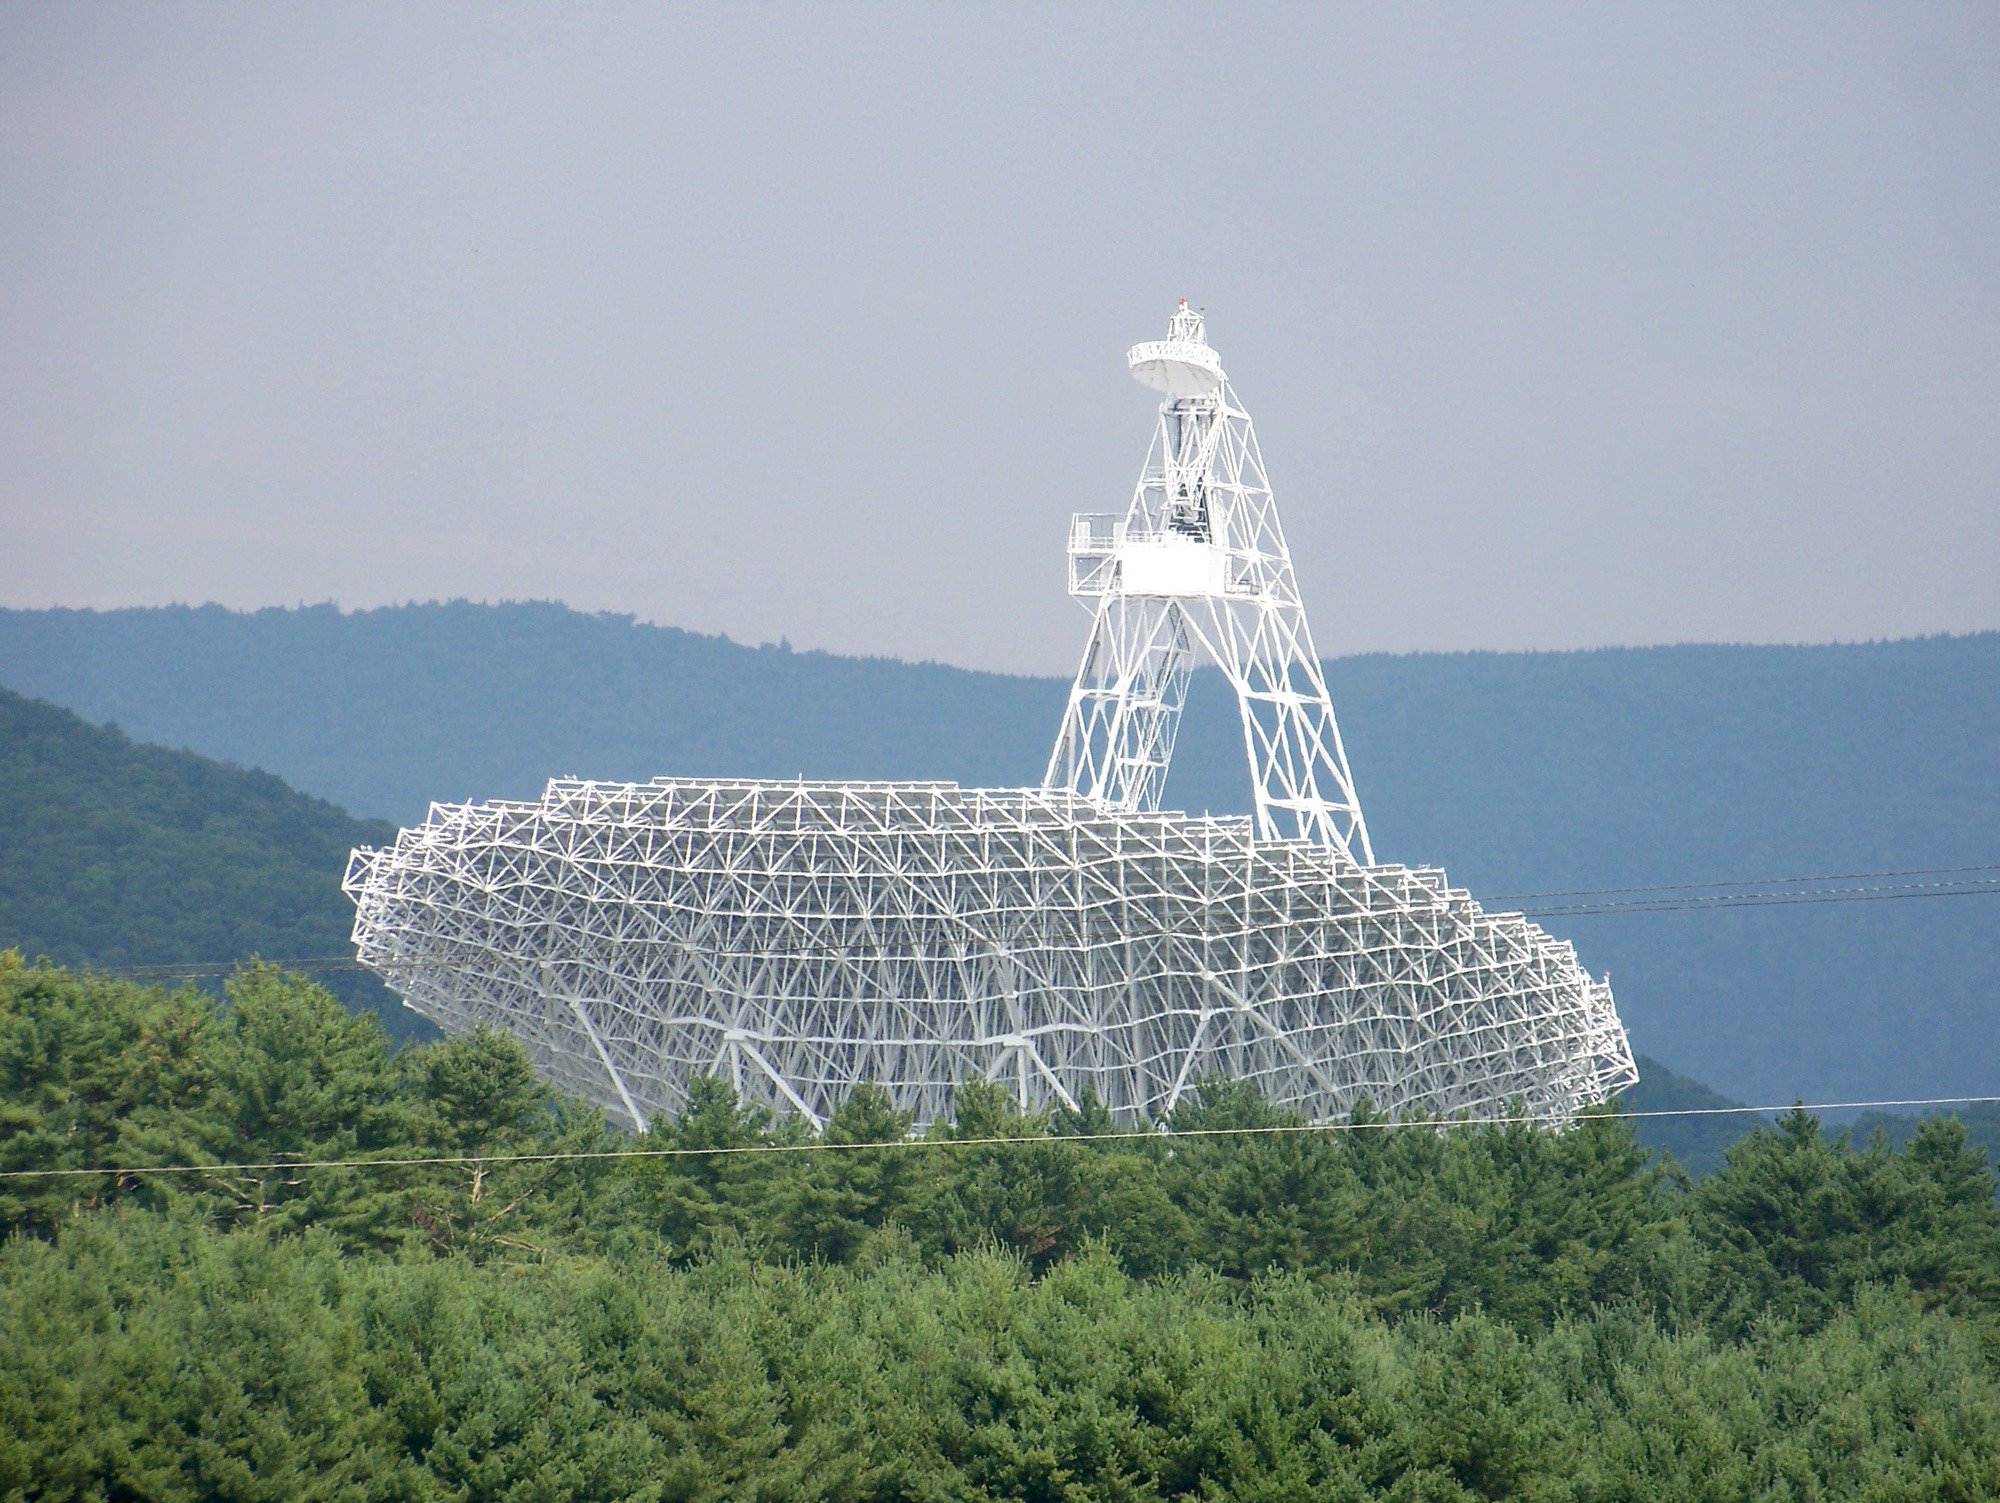 مرصد غرين بانك في ولاية فرجينيا الغربية، واحد من بين التلسكوبات الراديوية العديدة التي يستخدمها مشروع NANOGrav.